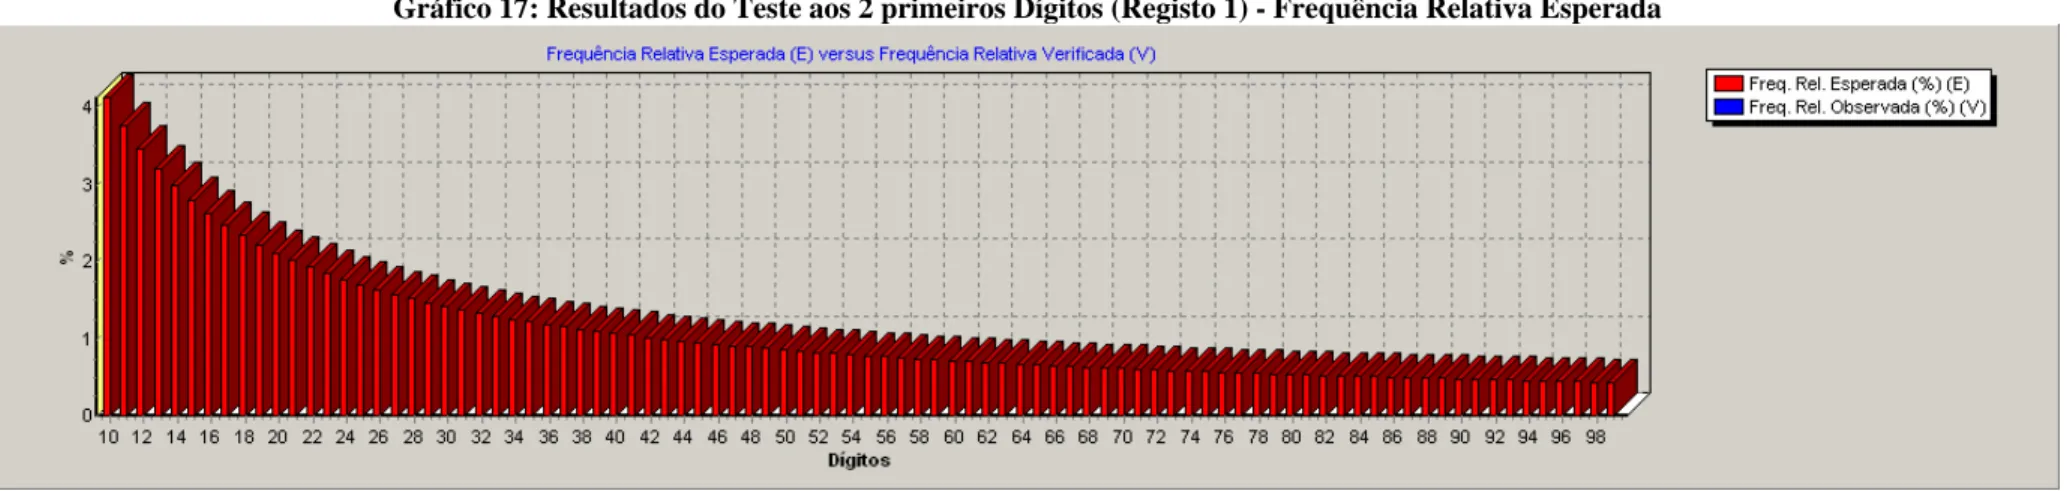 Gráfico 17: Resultados do Teste aos 2 primeiros Dígitos (Registo 1) - Frequência Relativa Esperada 